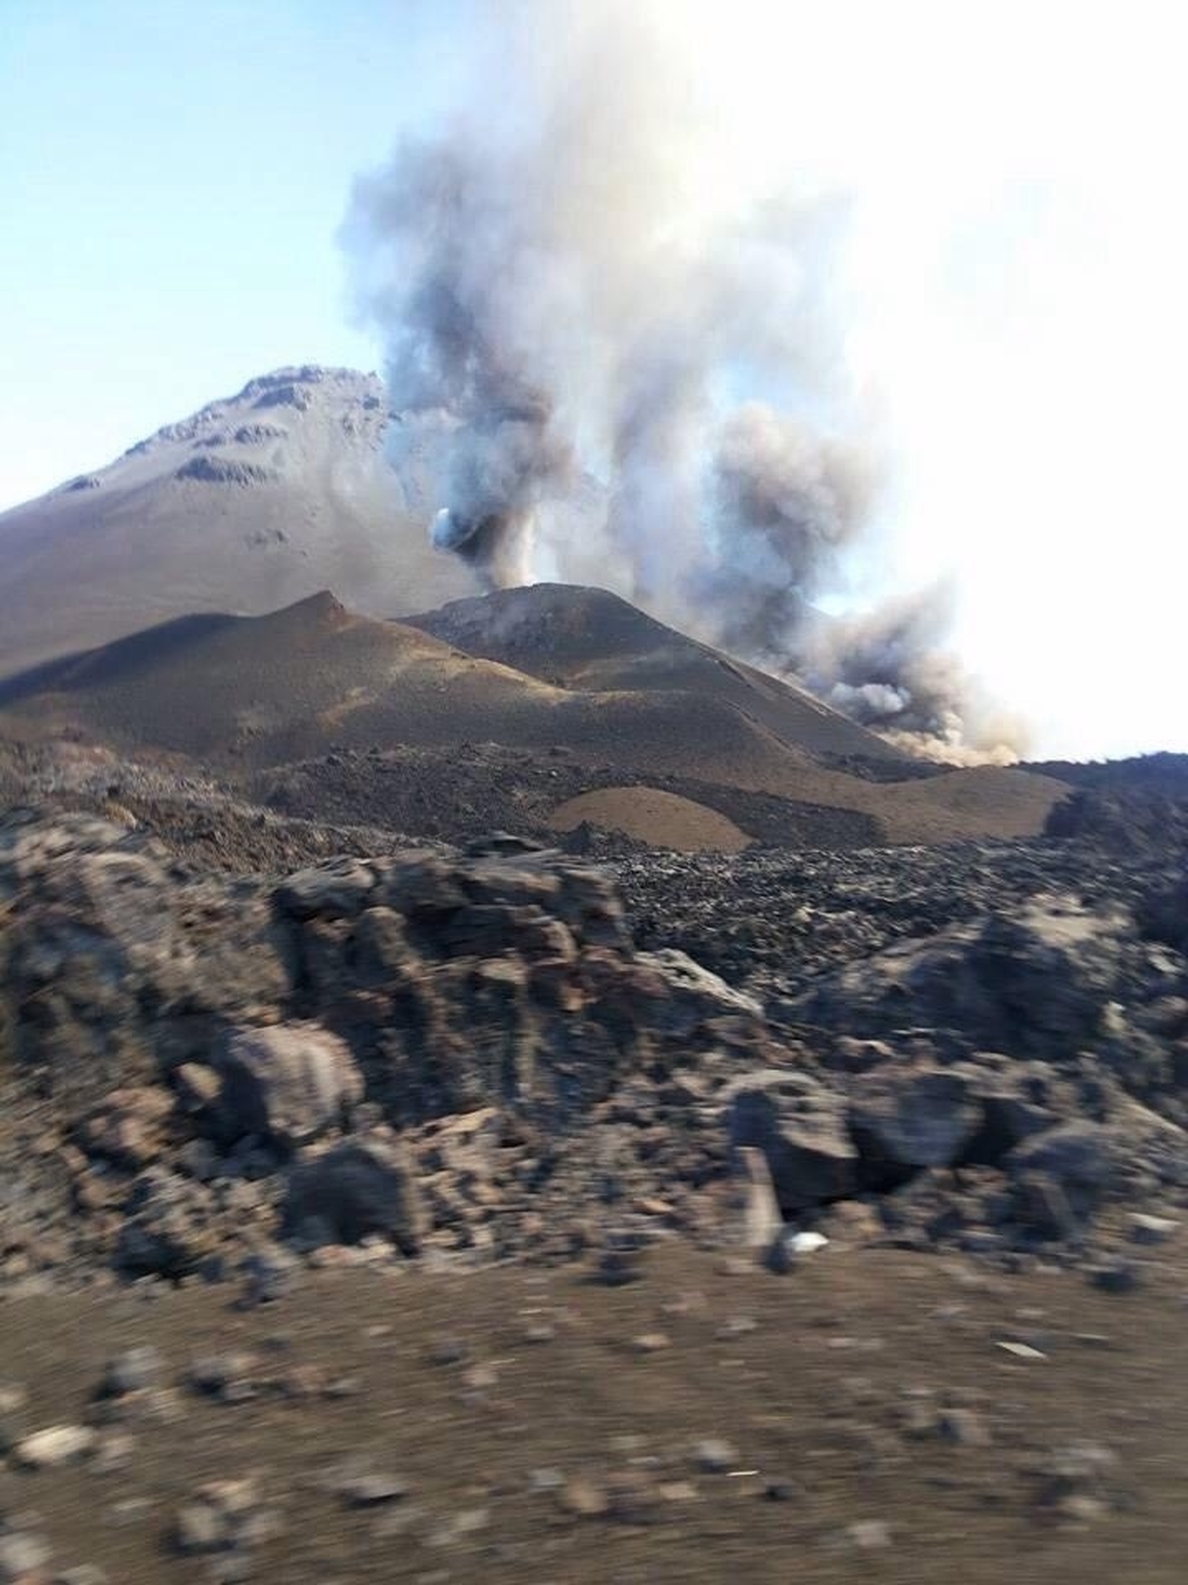 Científicos del Involcan registran señales precursoras de la erupción de Pico do Fogo (Cabo Verde)